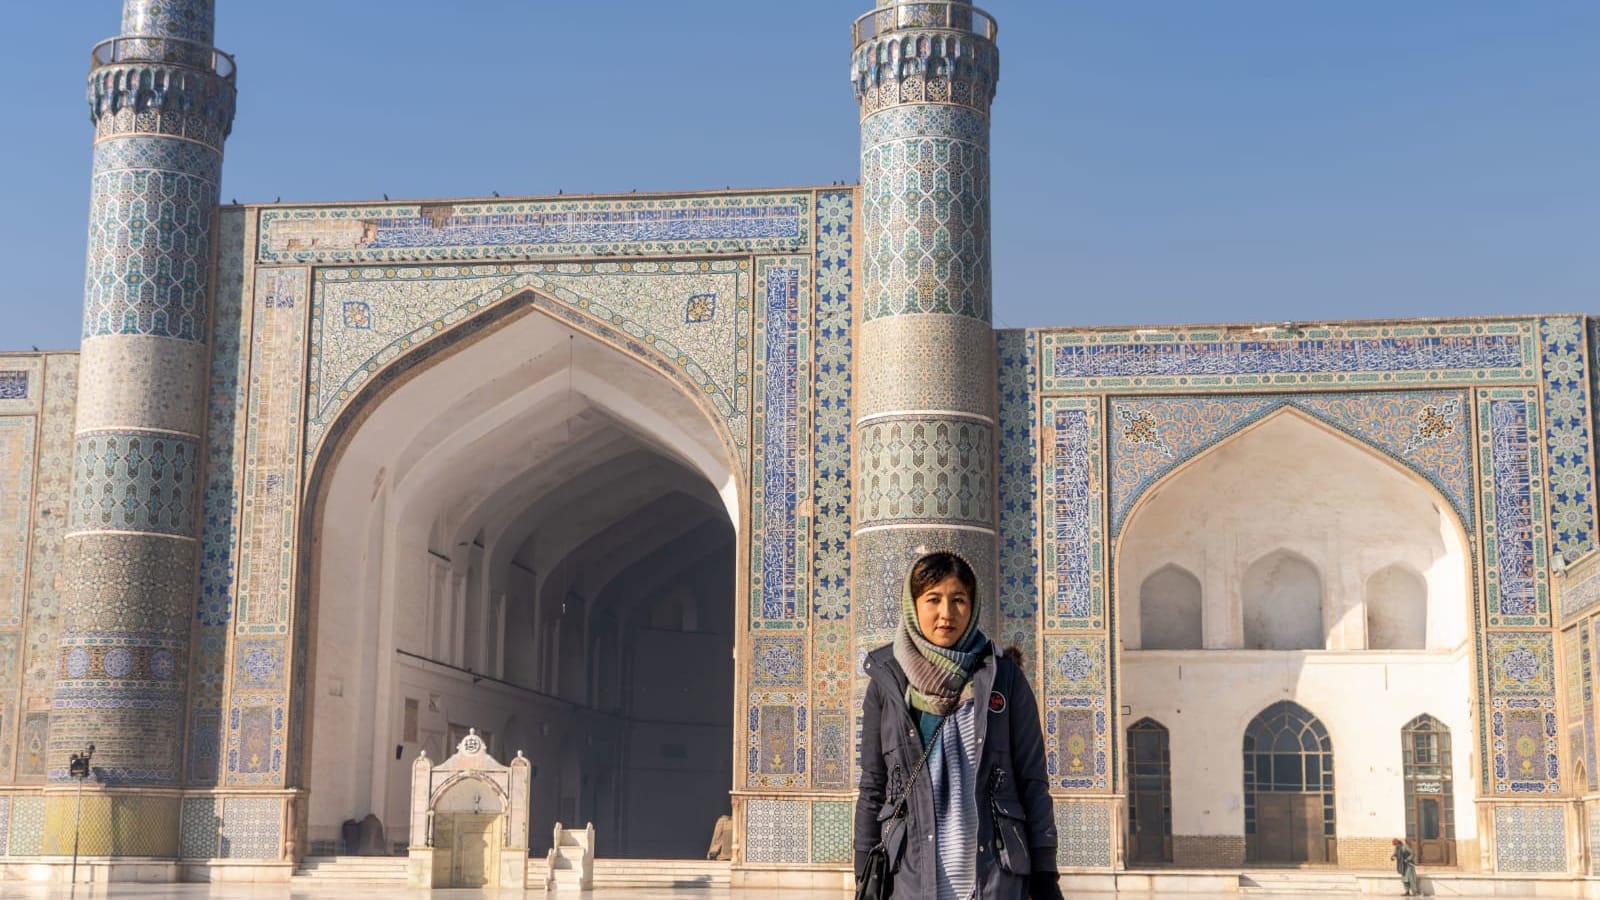 مسجد أفغانستان الرائع المعروف بالبلاط الأزرق والحمام الأبيض